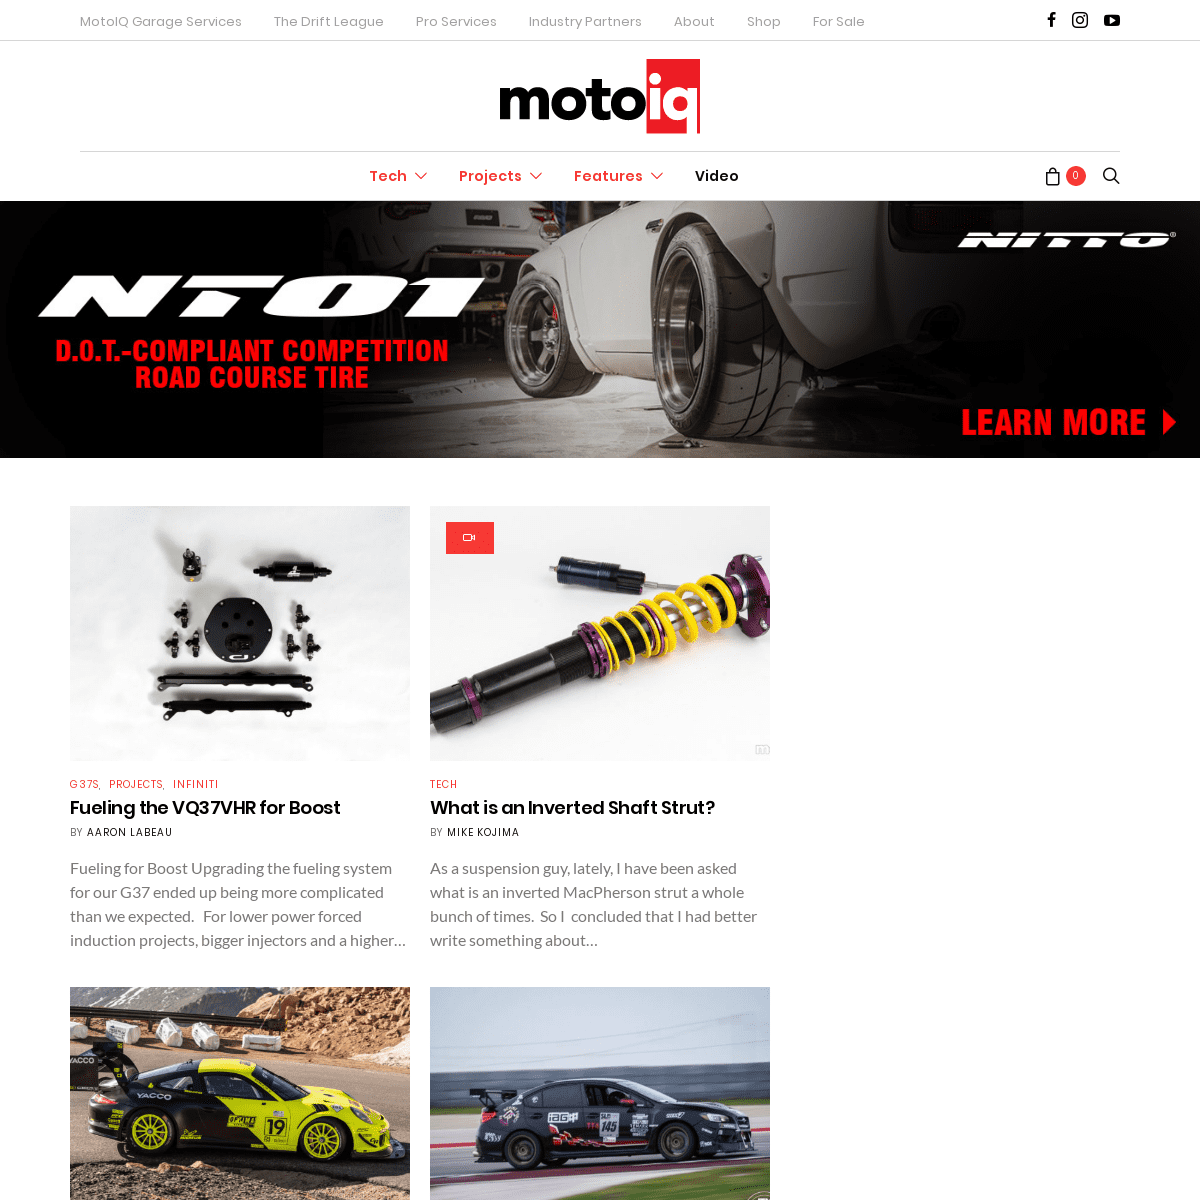 A complete backup of motoiq.com